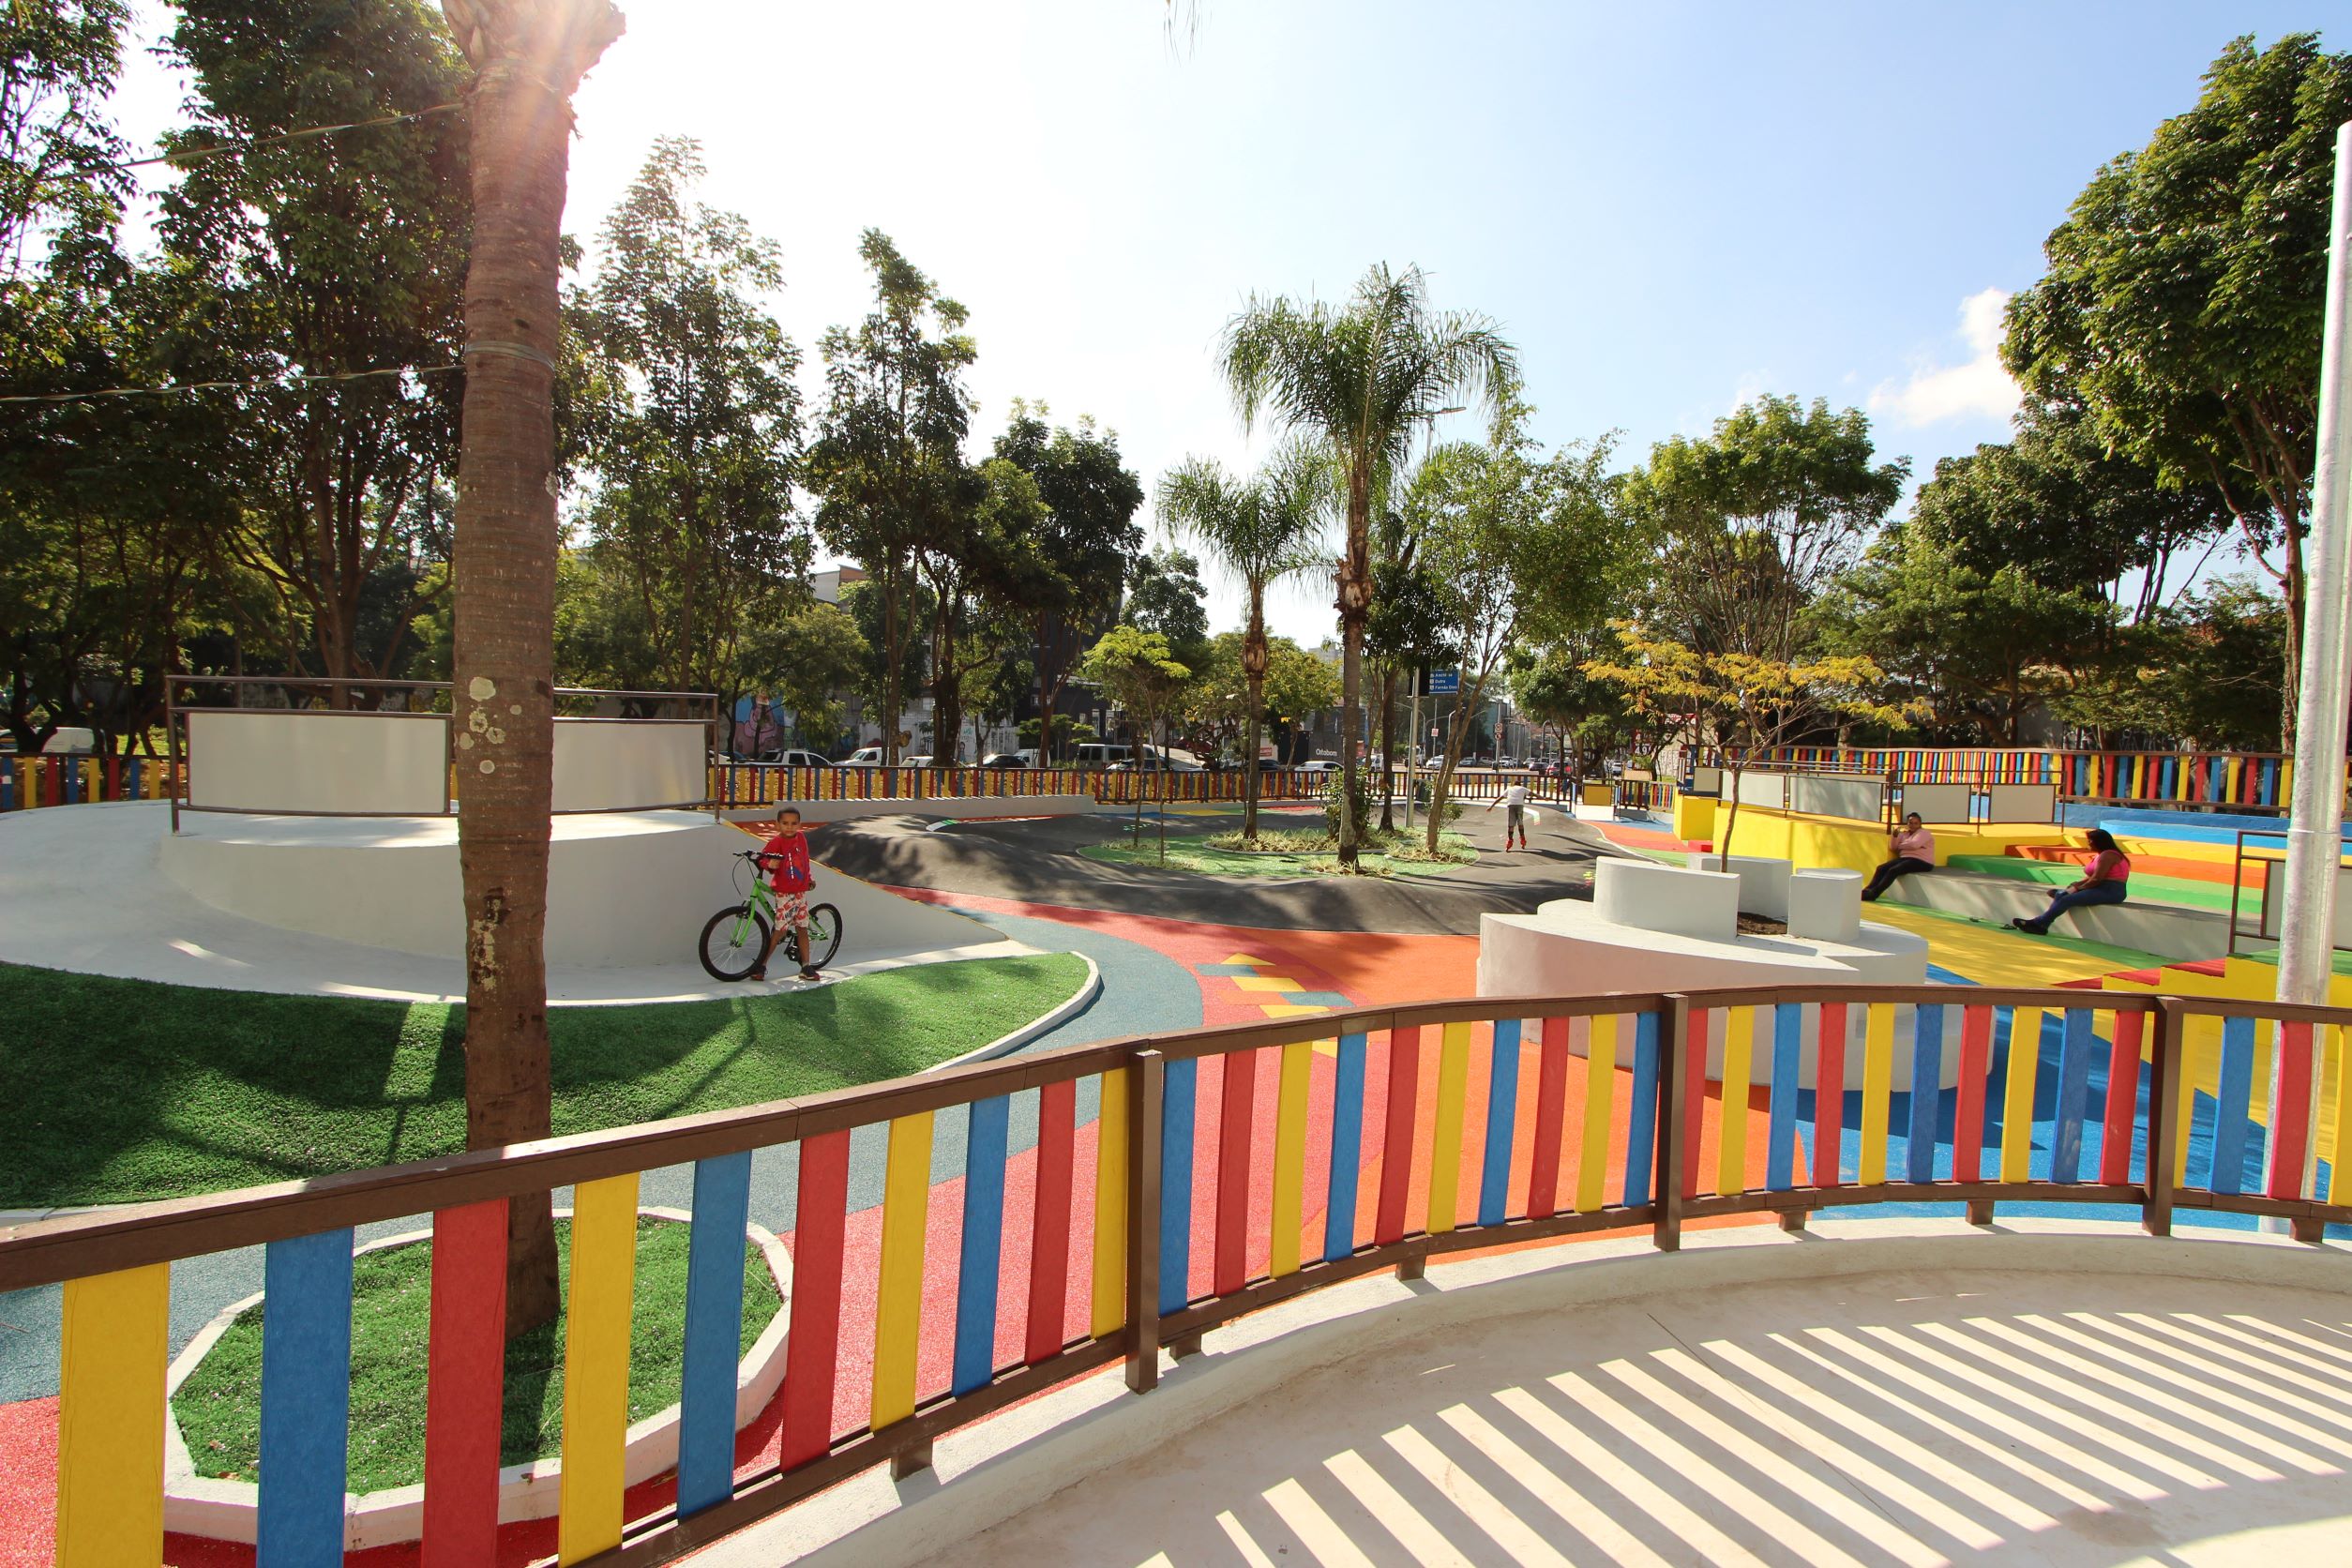 Com cores e formas vibrantes, o parque oferece uma pista de pump track baby e escalada, entre os destaques para as crianças